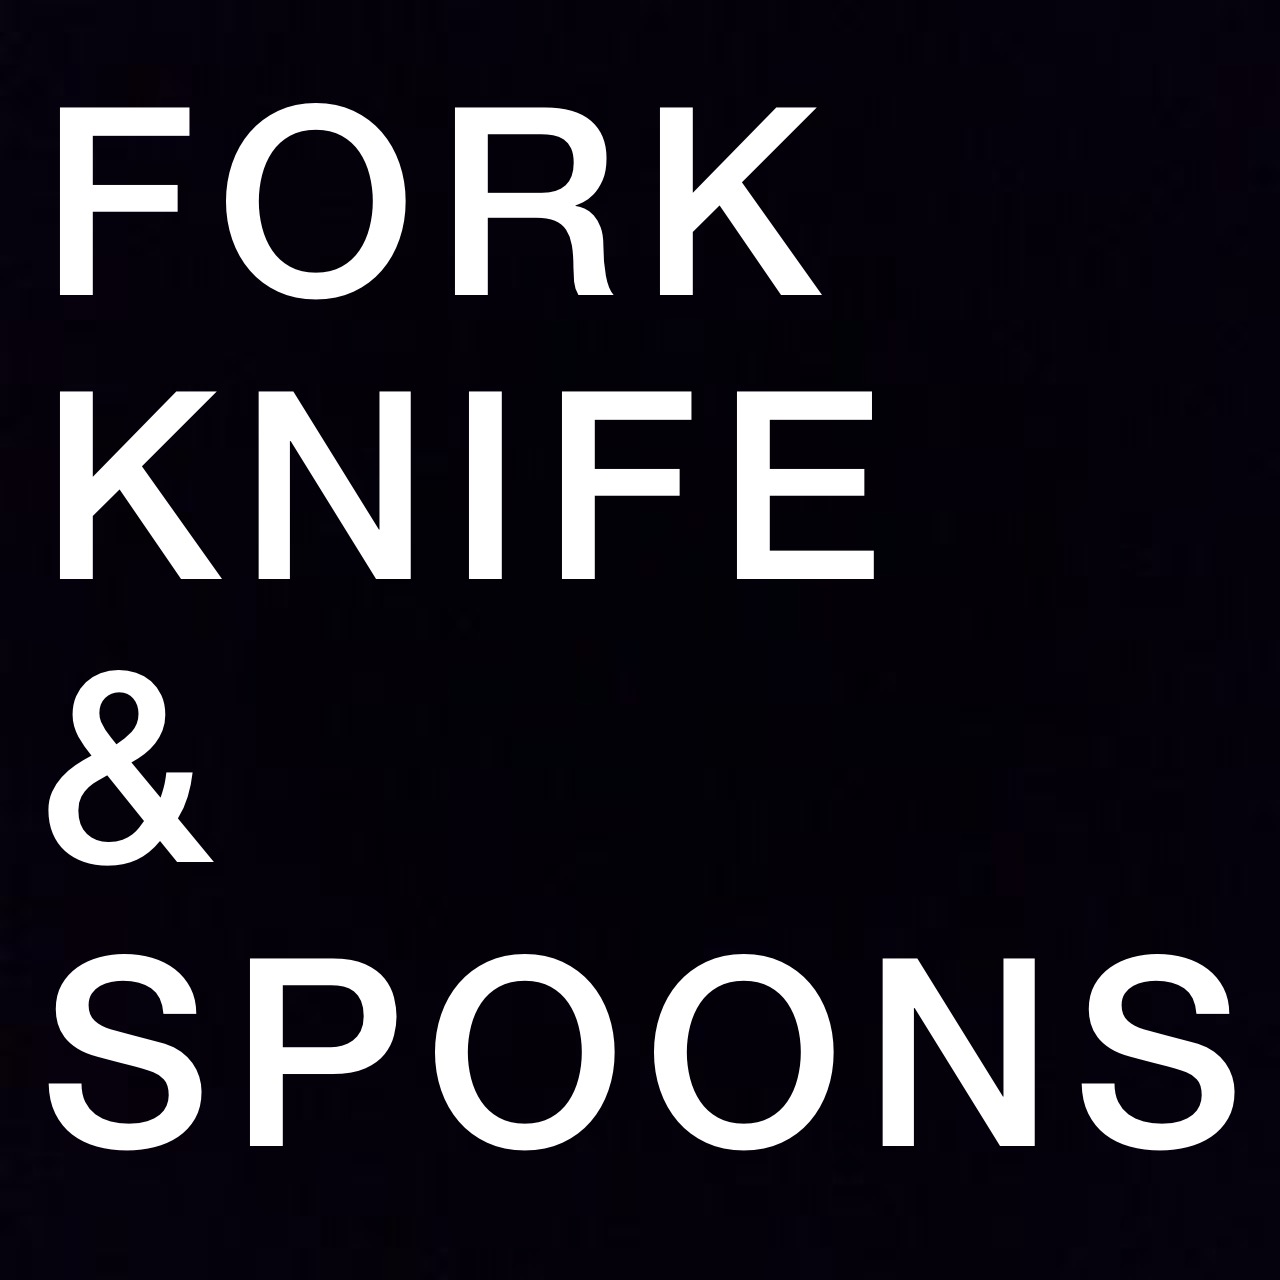 FORK KNIFE SPOONS LOGO.JPG